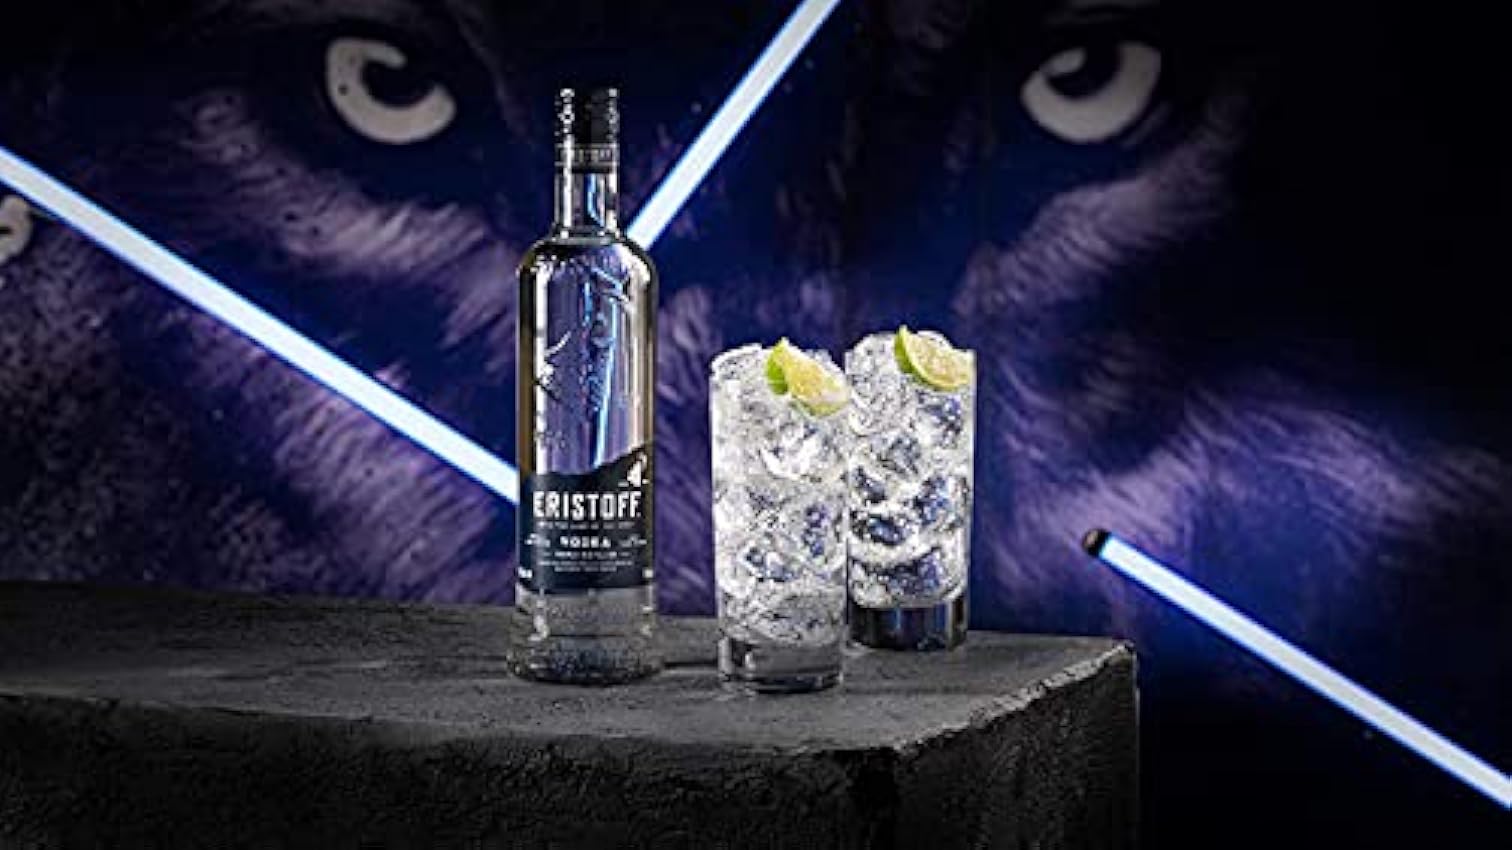 Eristoff Premium Vodka - 350 ml G3i14buN